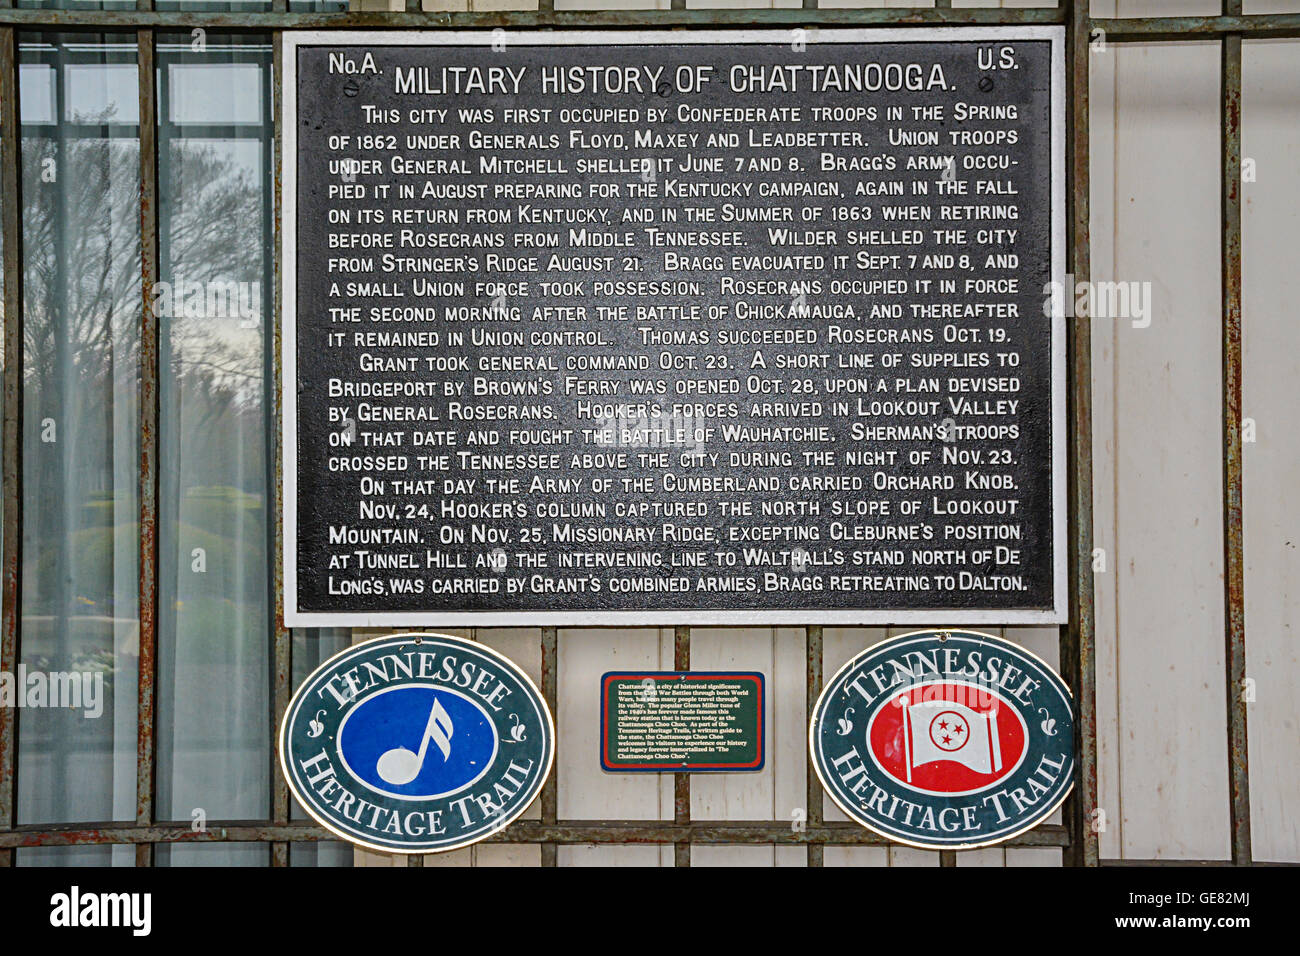 La historia militar de Chattanooga placa por el sendero del patrimonio TN cuelga sobre la puerta en el Chattanooga Choo Choo complejo hotelero Foto de stock